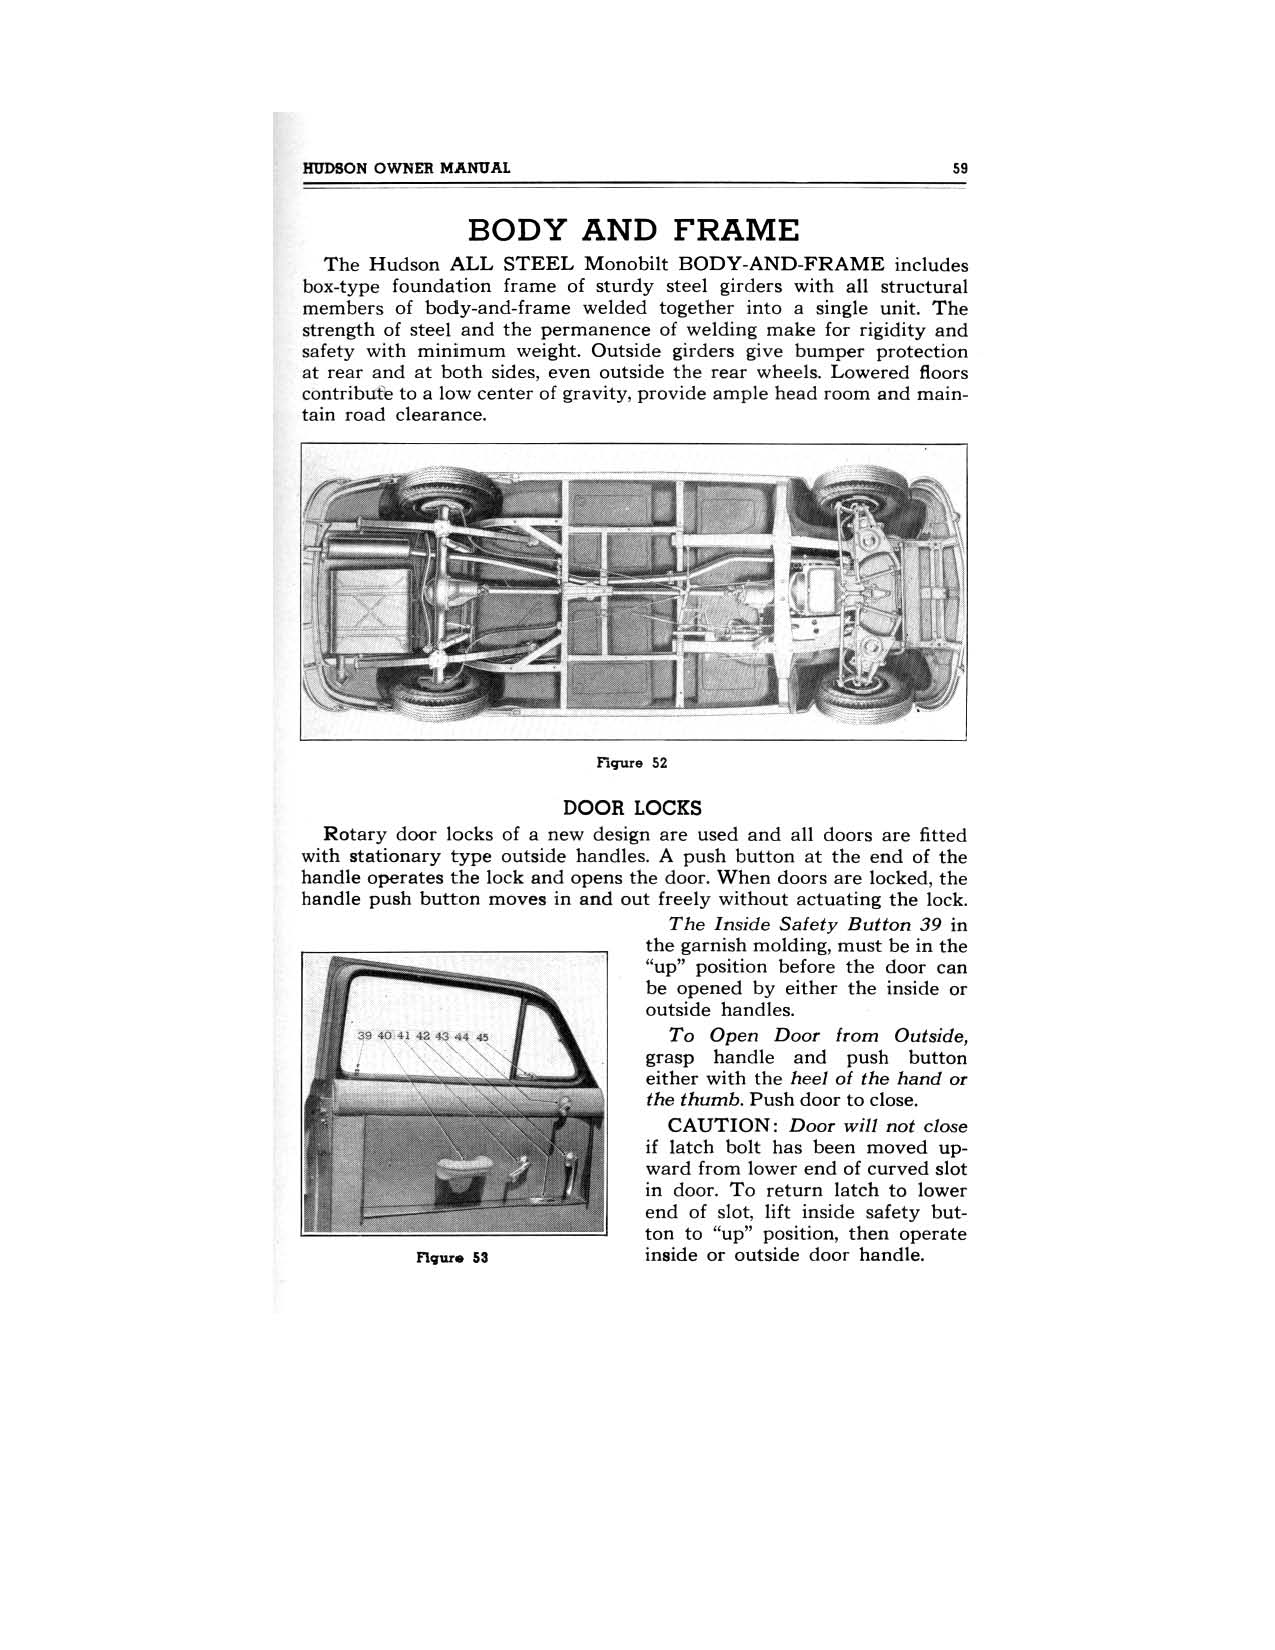 1949 Hudson Owners Manual-61